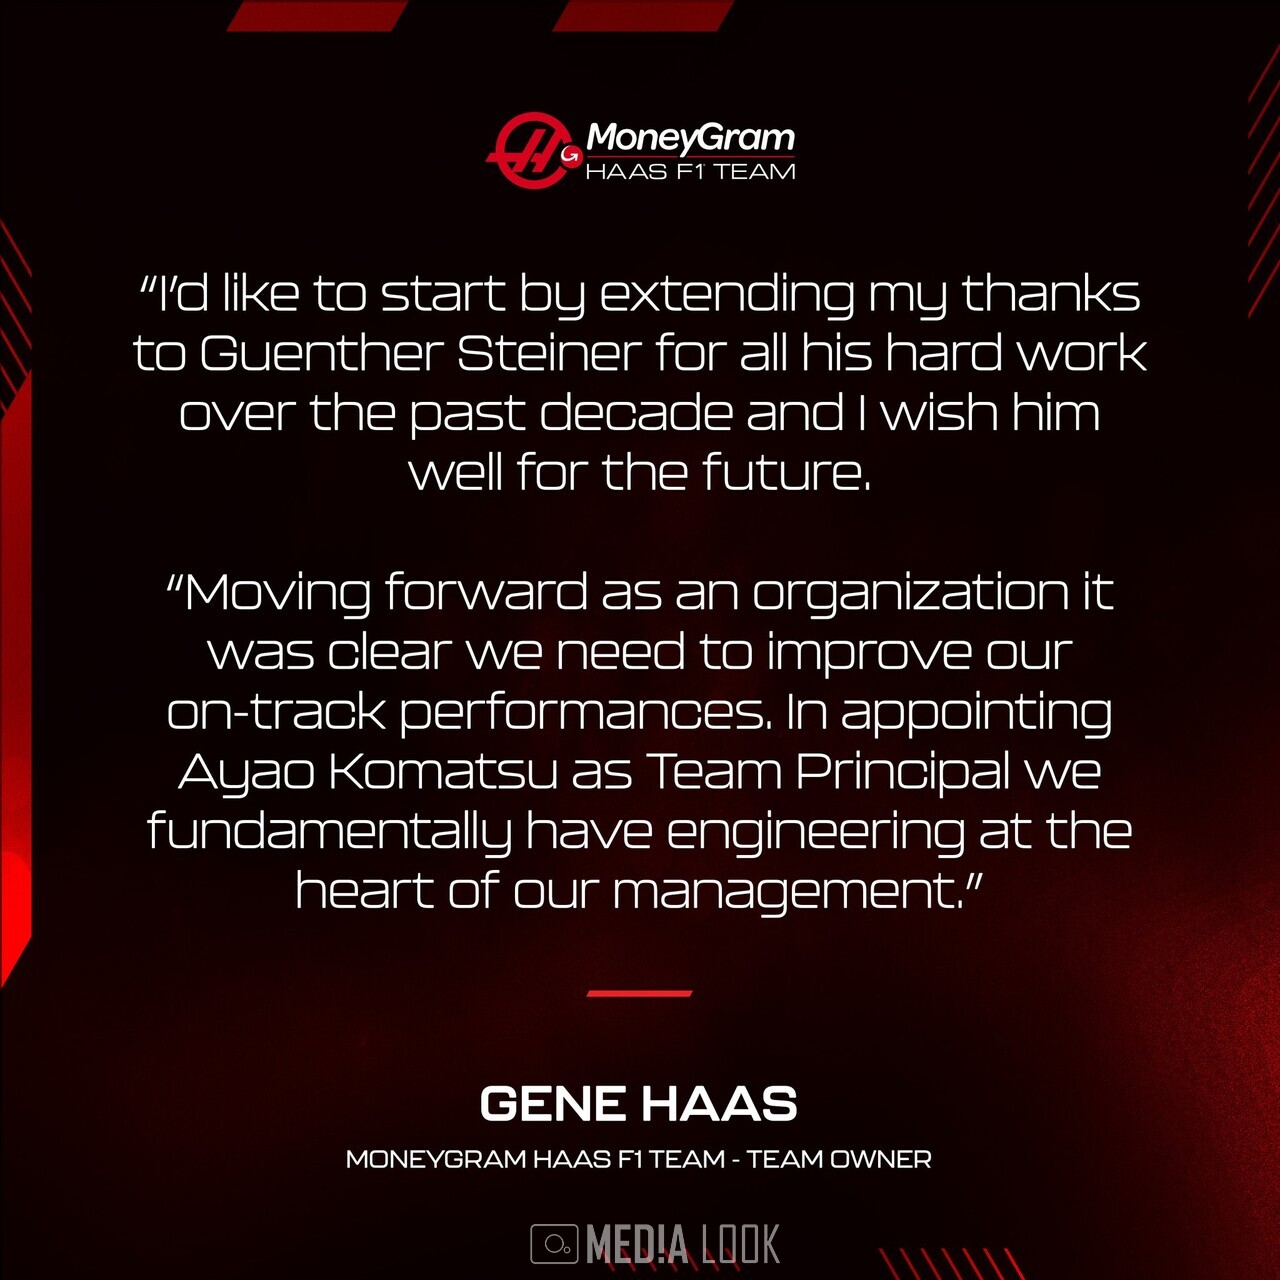 '스타이너' 사임 관련 성명문 / 사진 출처: Haas F1